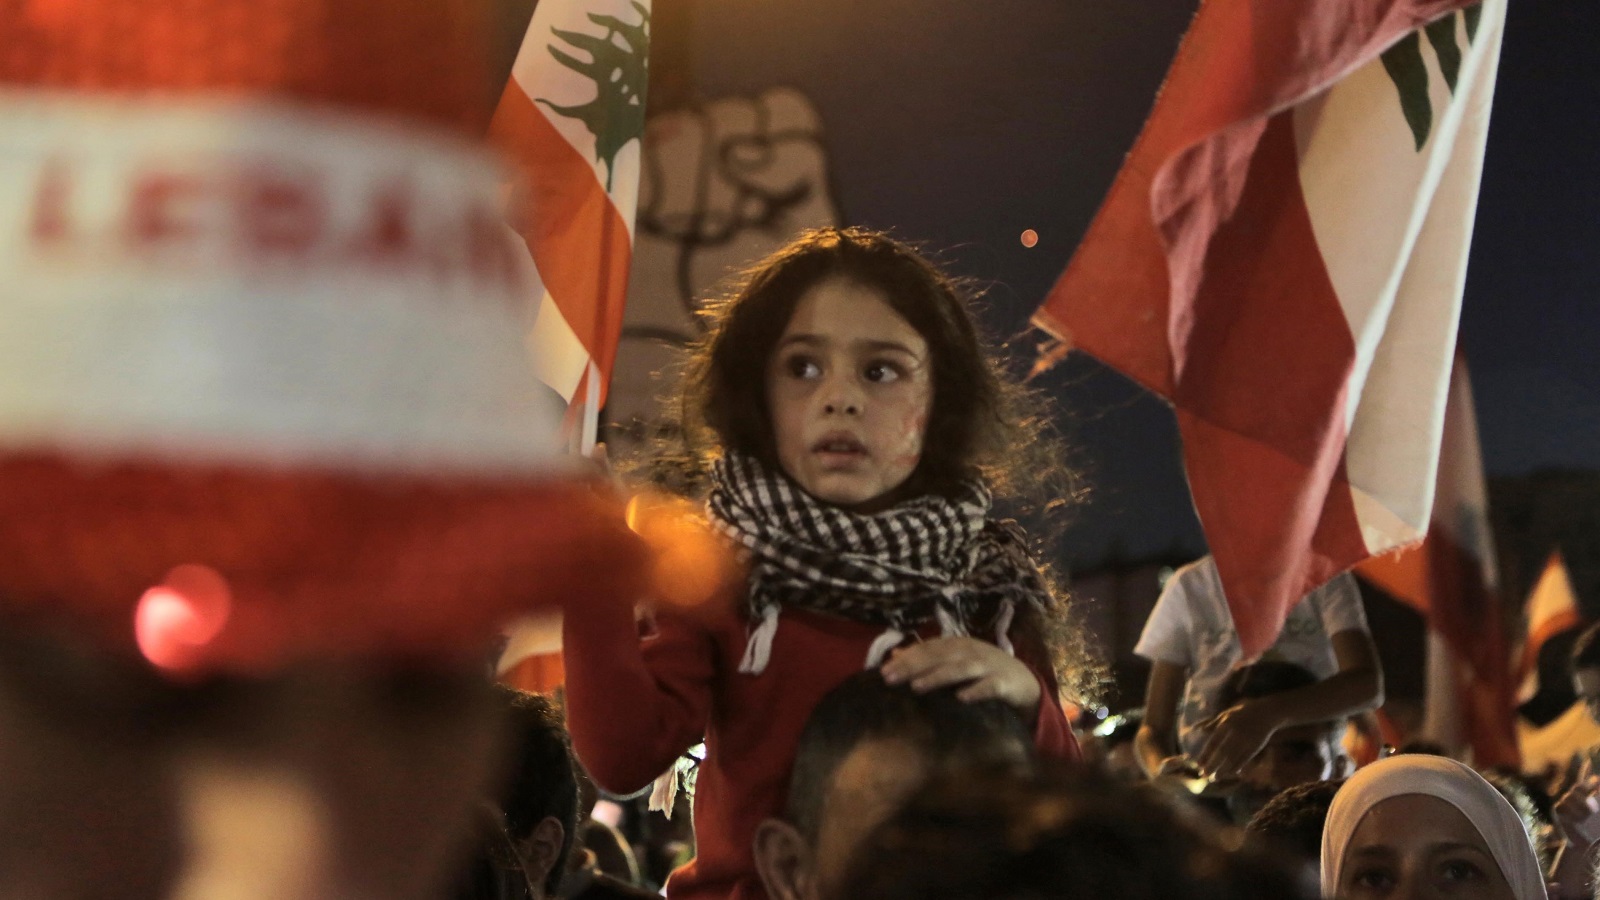 شهر من الثورة اللبنانية: شعب ناهض يبني حياة جديدة